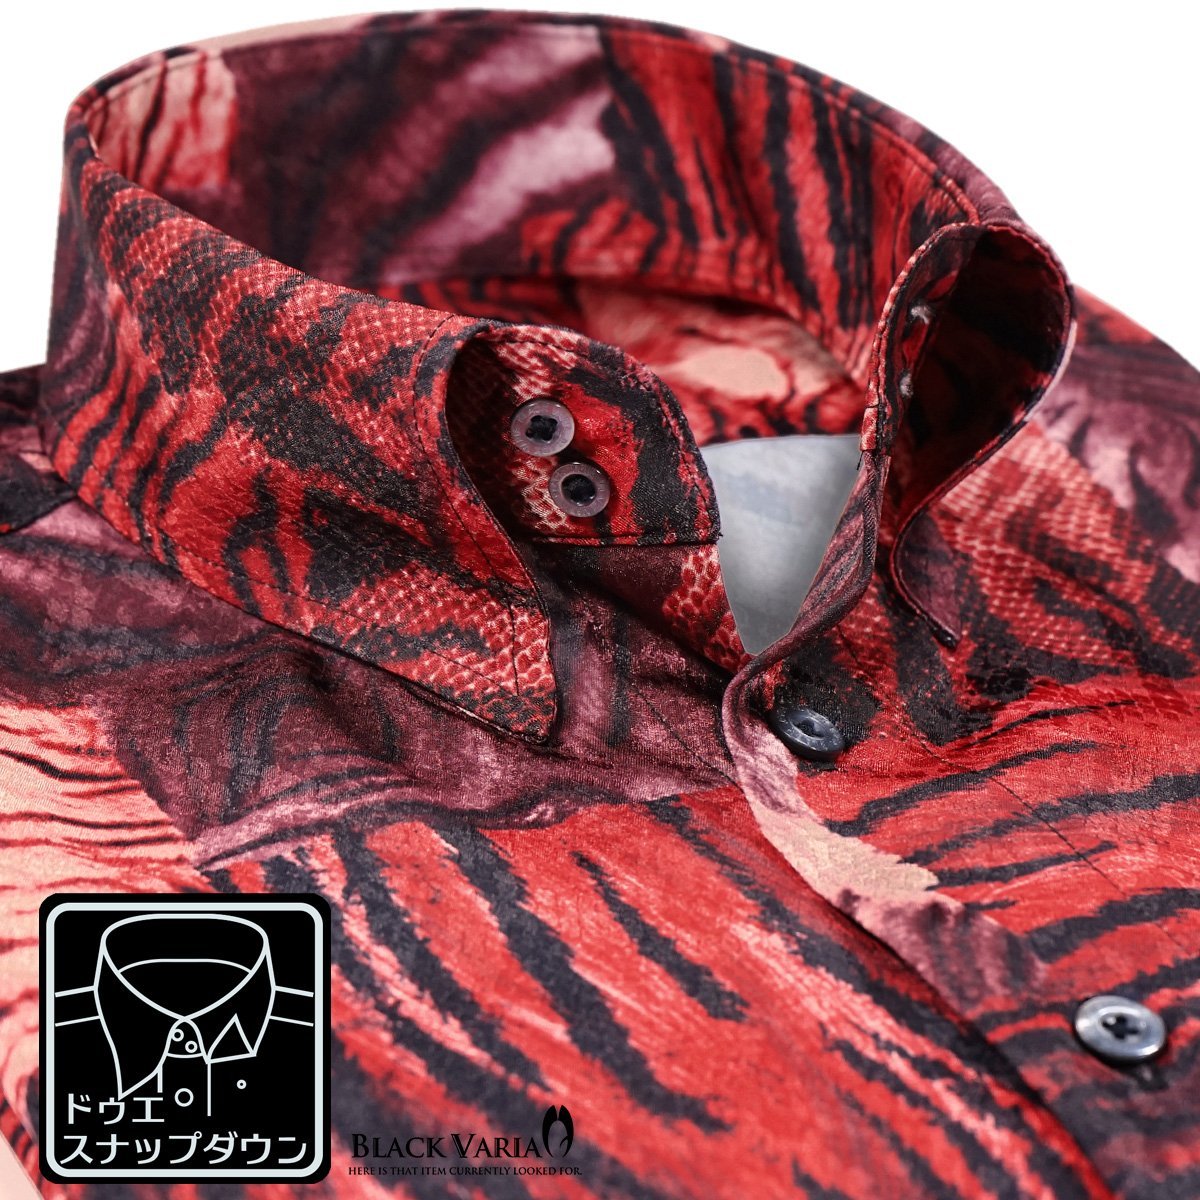 211201-re BlackVaria ドゥエボットーニ タイガー 虎柄 ドレスシャツ スナップダウン サテンジャガード メンズ(レッド赤) L 日本製